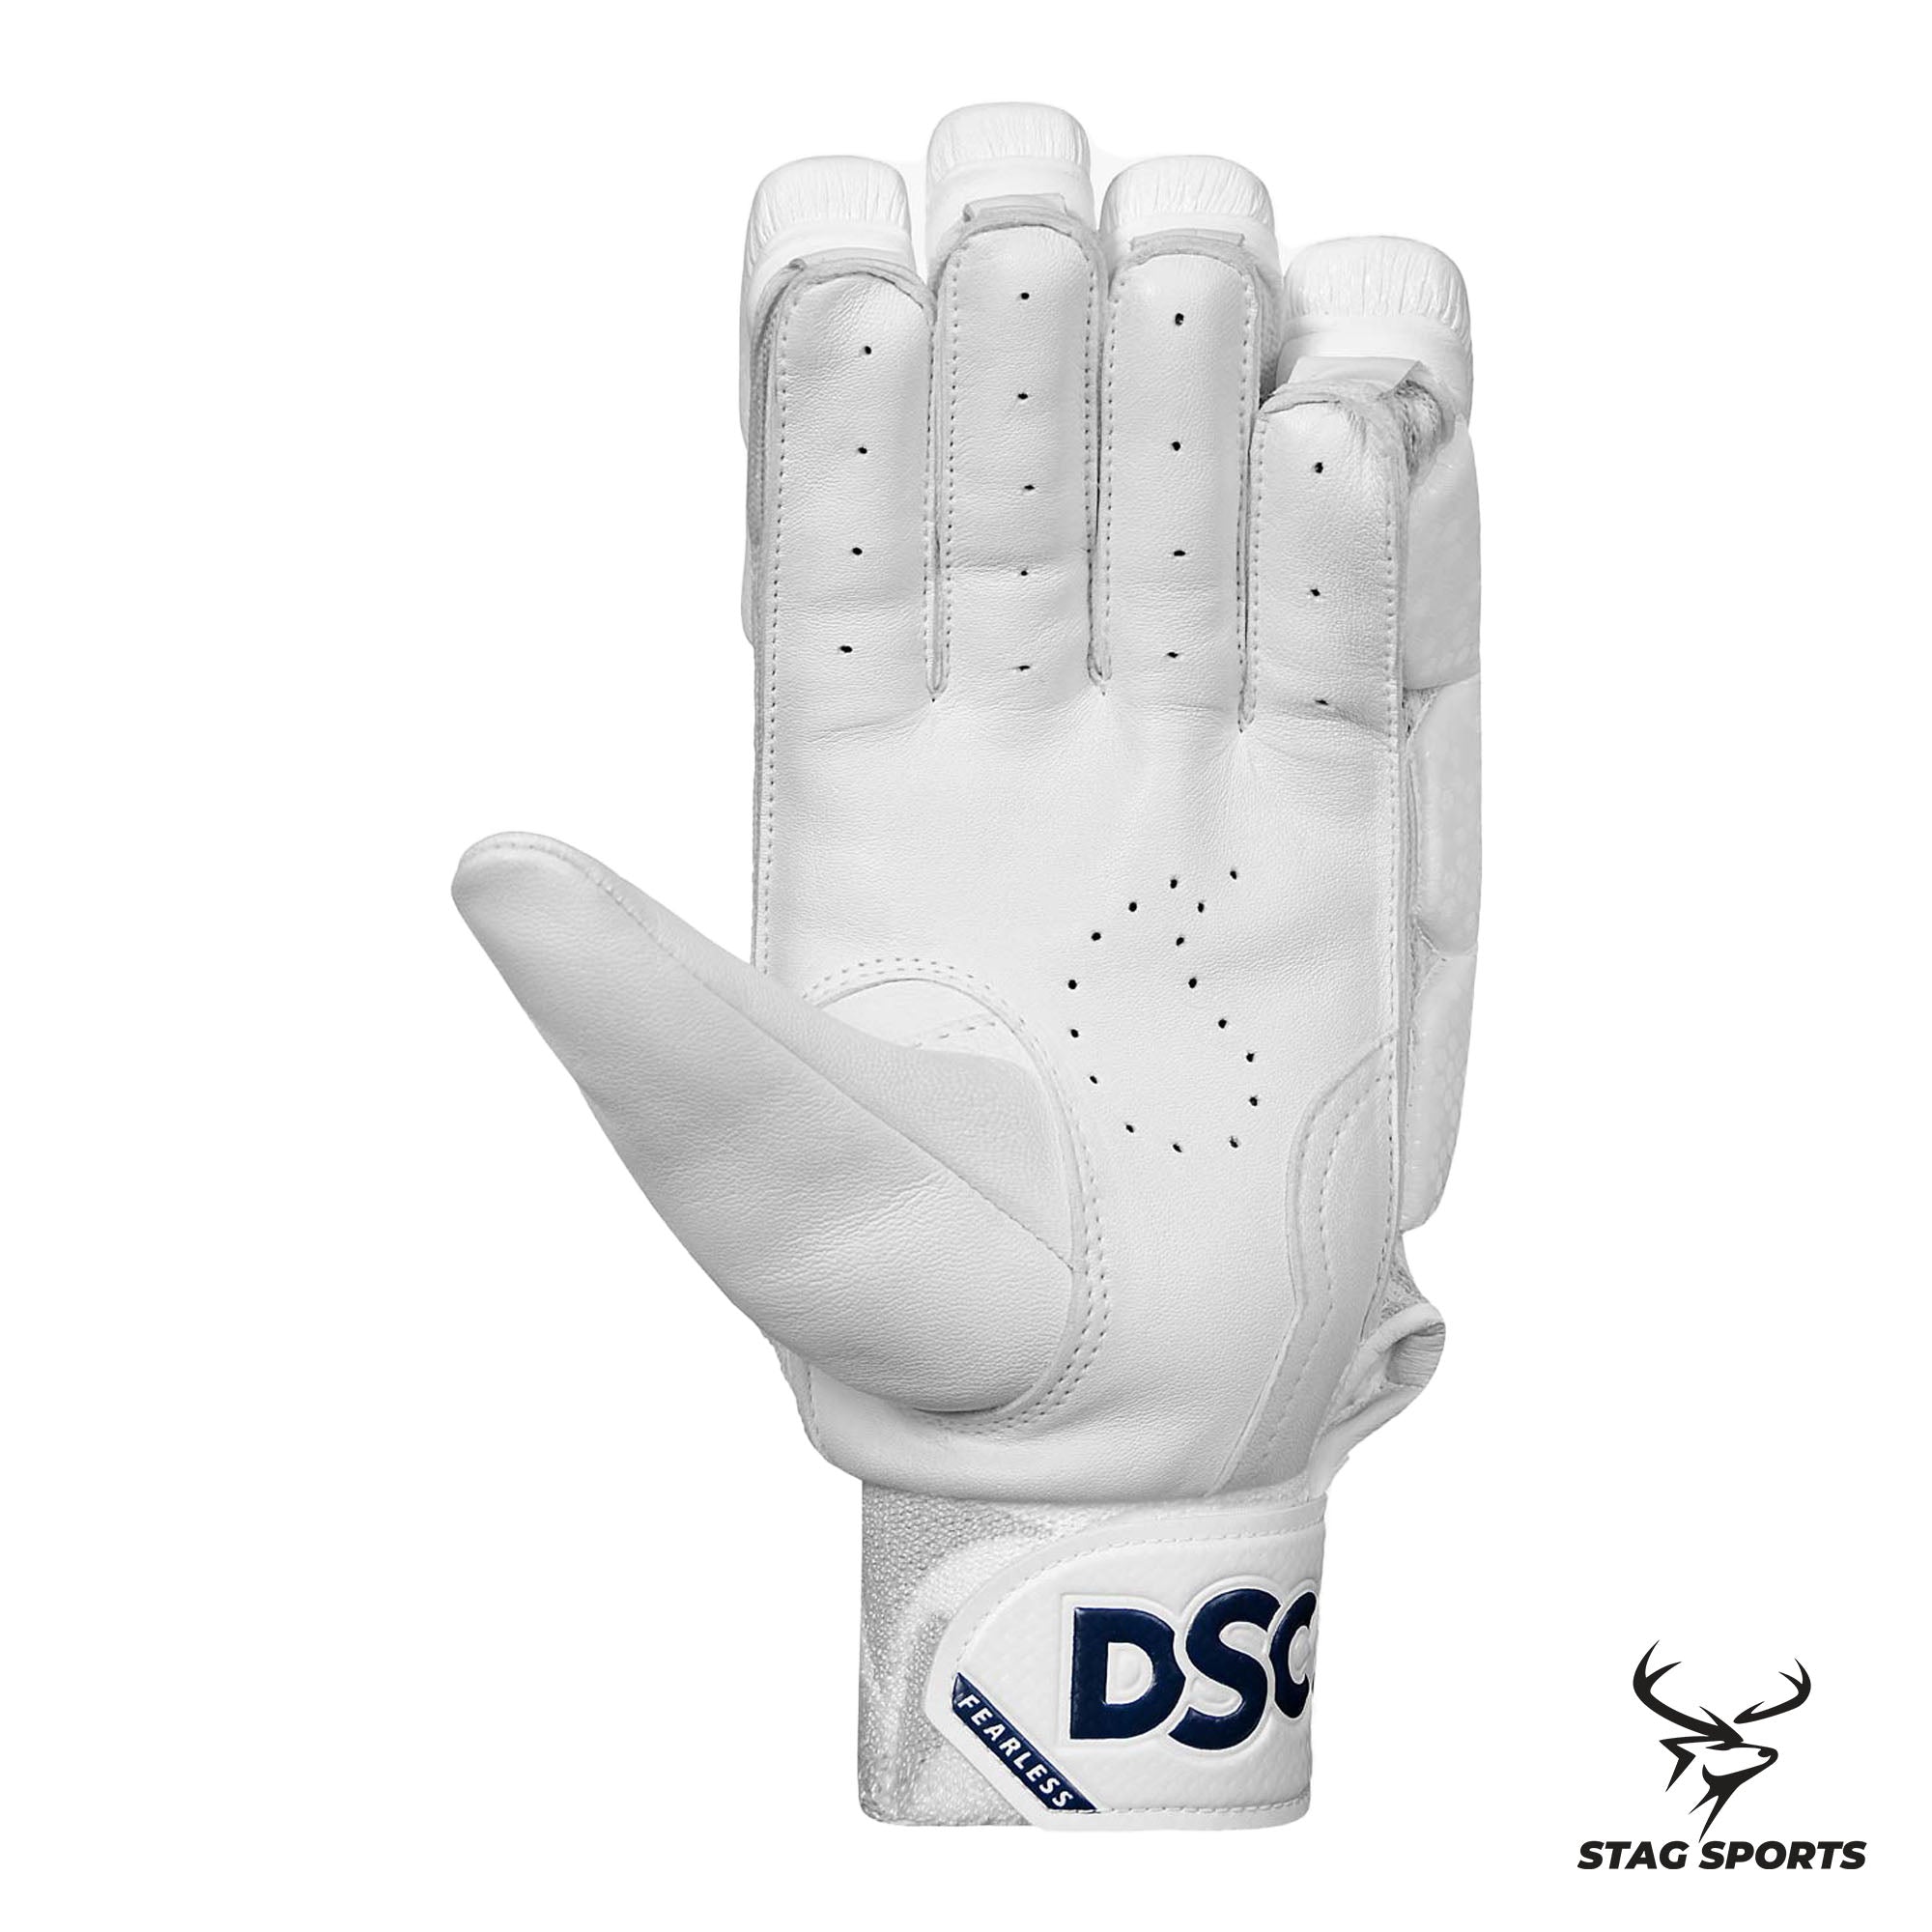 DSC PEARLA 1000 Cricket Batting Gloves